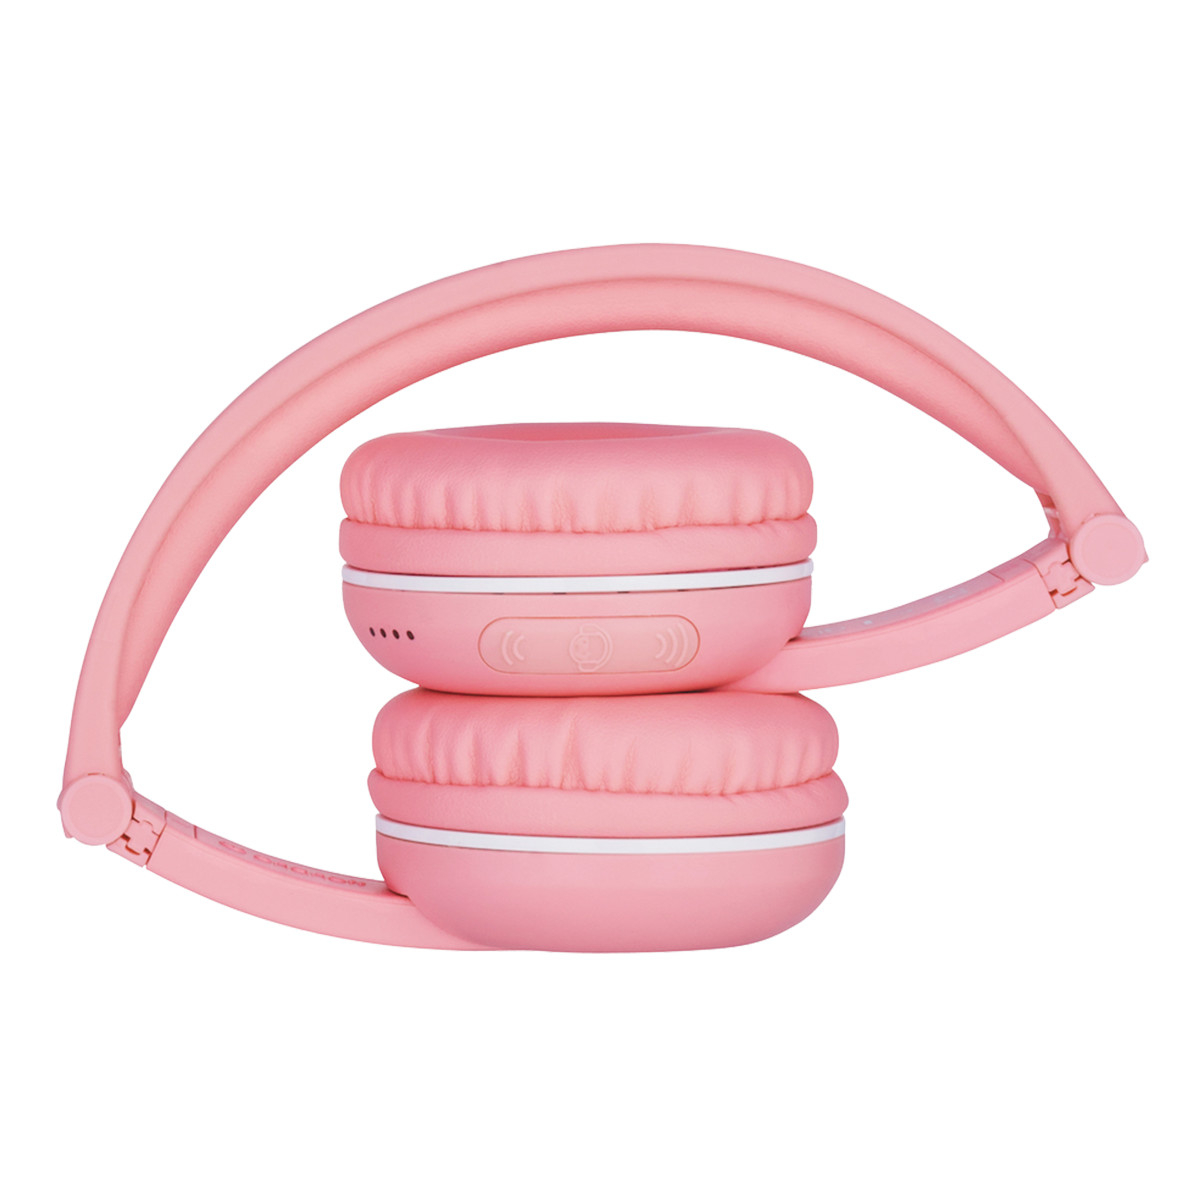 BuddyPhones Play trådlösa barnhörlurar, Bluetooth, rosa